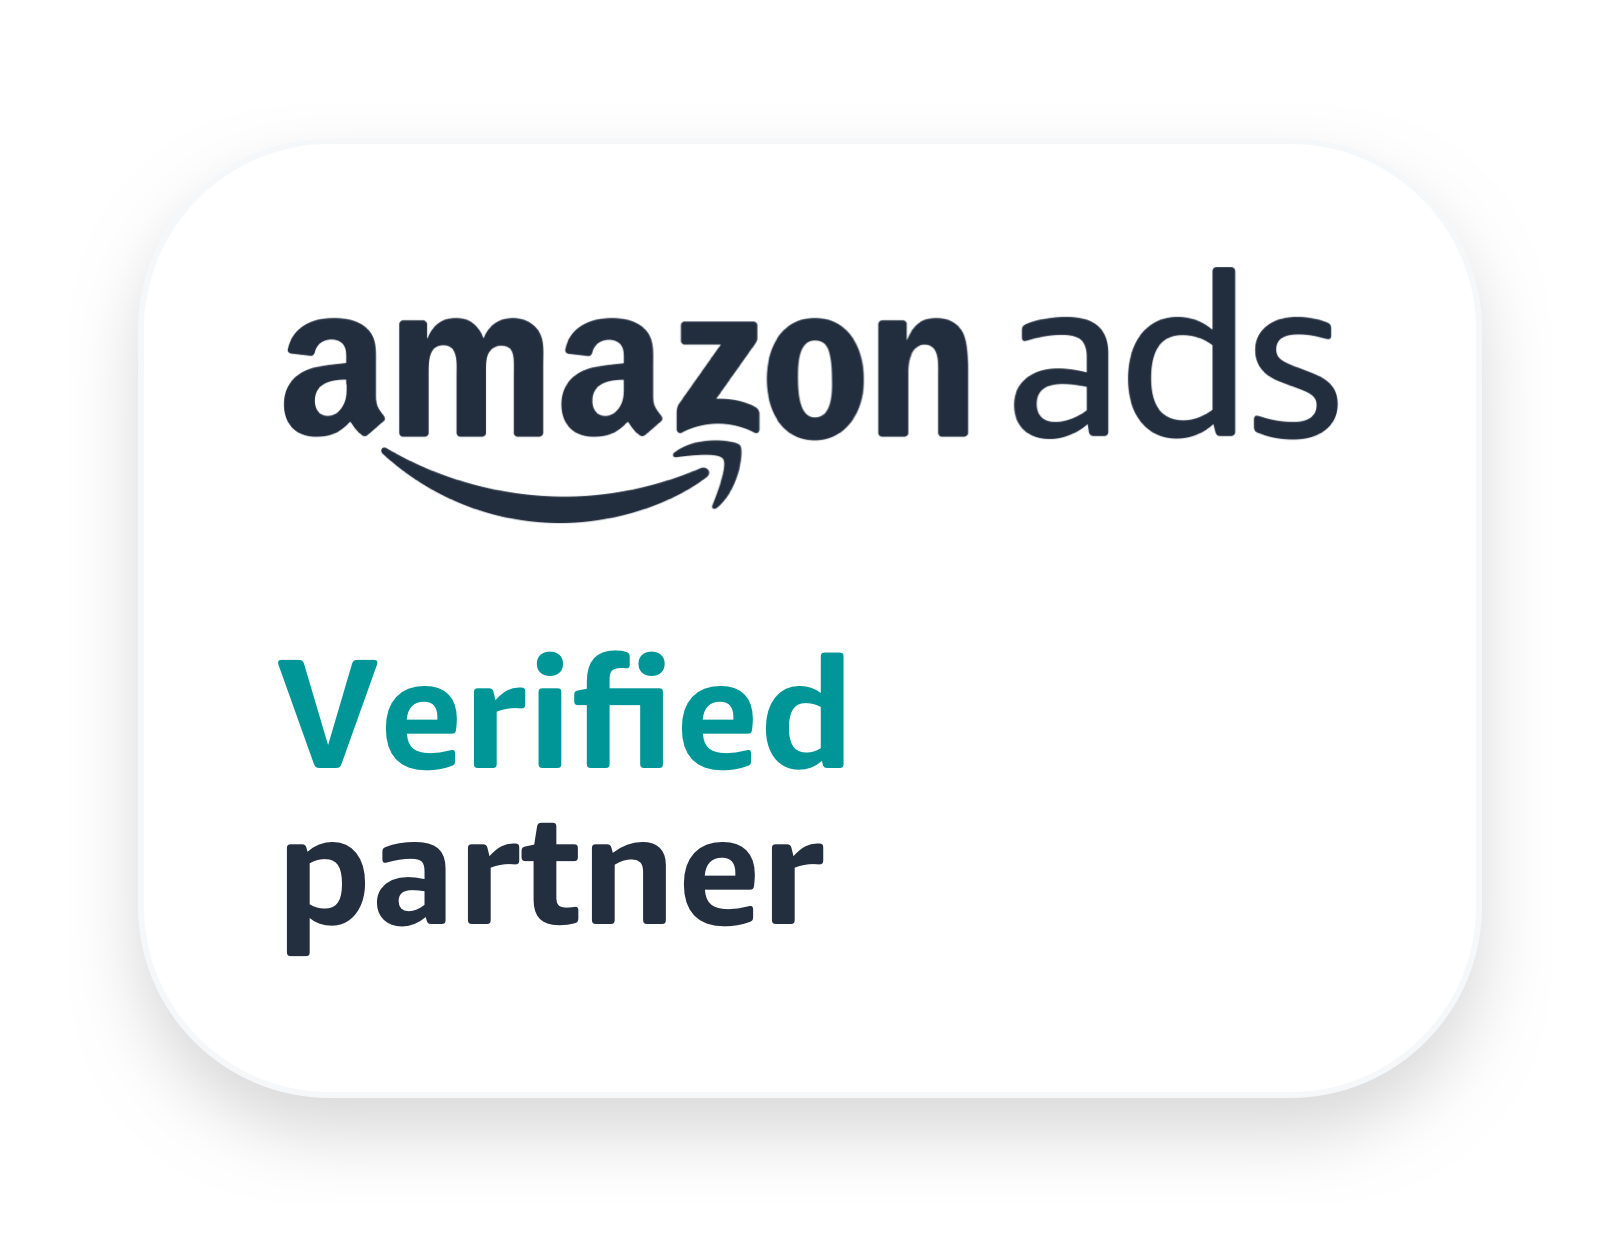 Namox - Amazon Ads verified Partner